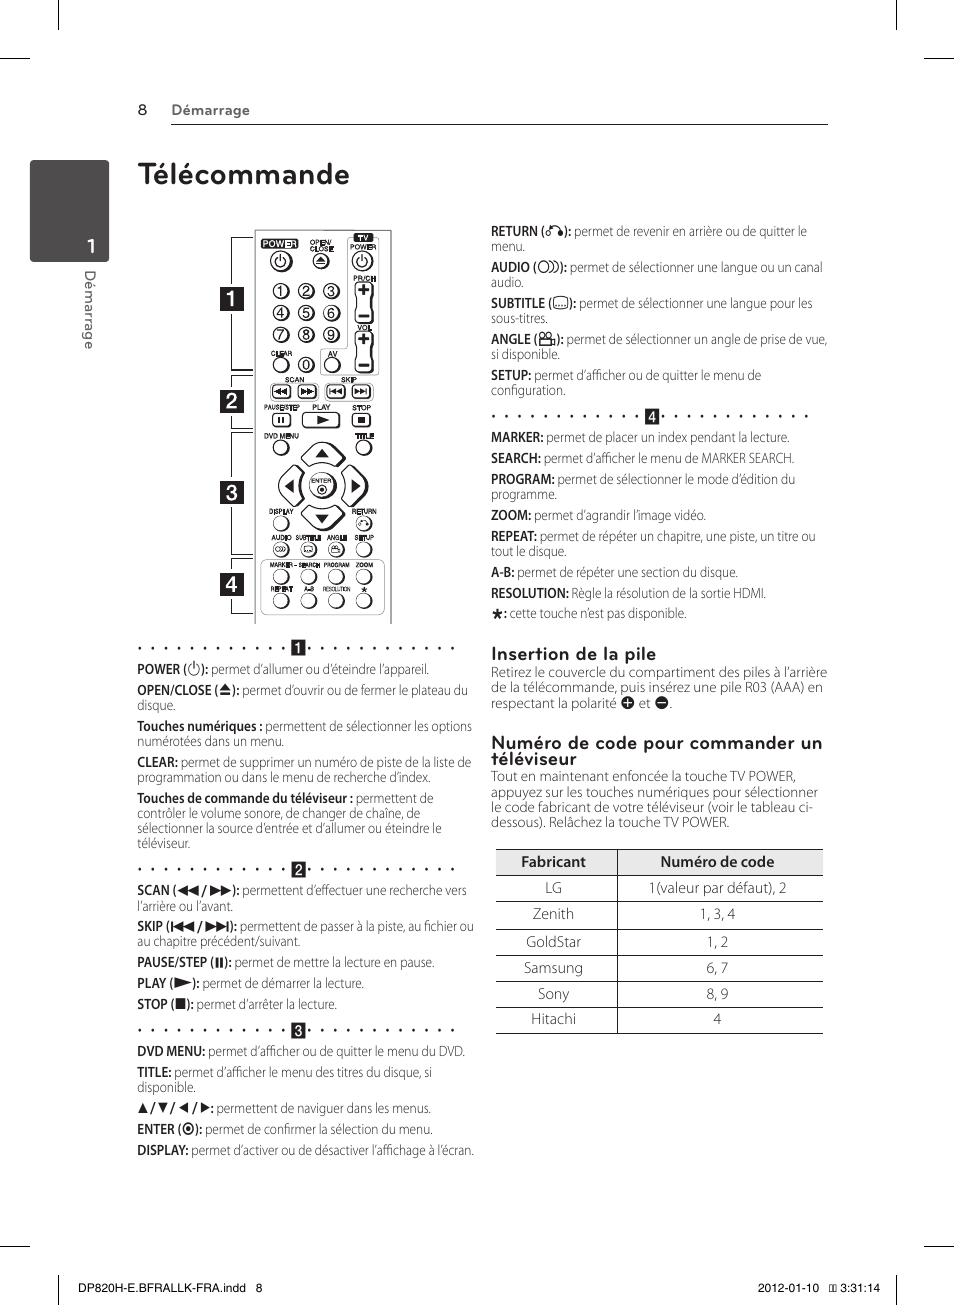 Télécommande, Insertion de la pile, Numéro de code pour commander un téléviseur | LG DP822H Manuel d'utilisation | Page 8 / 24